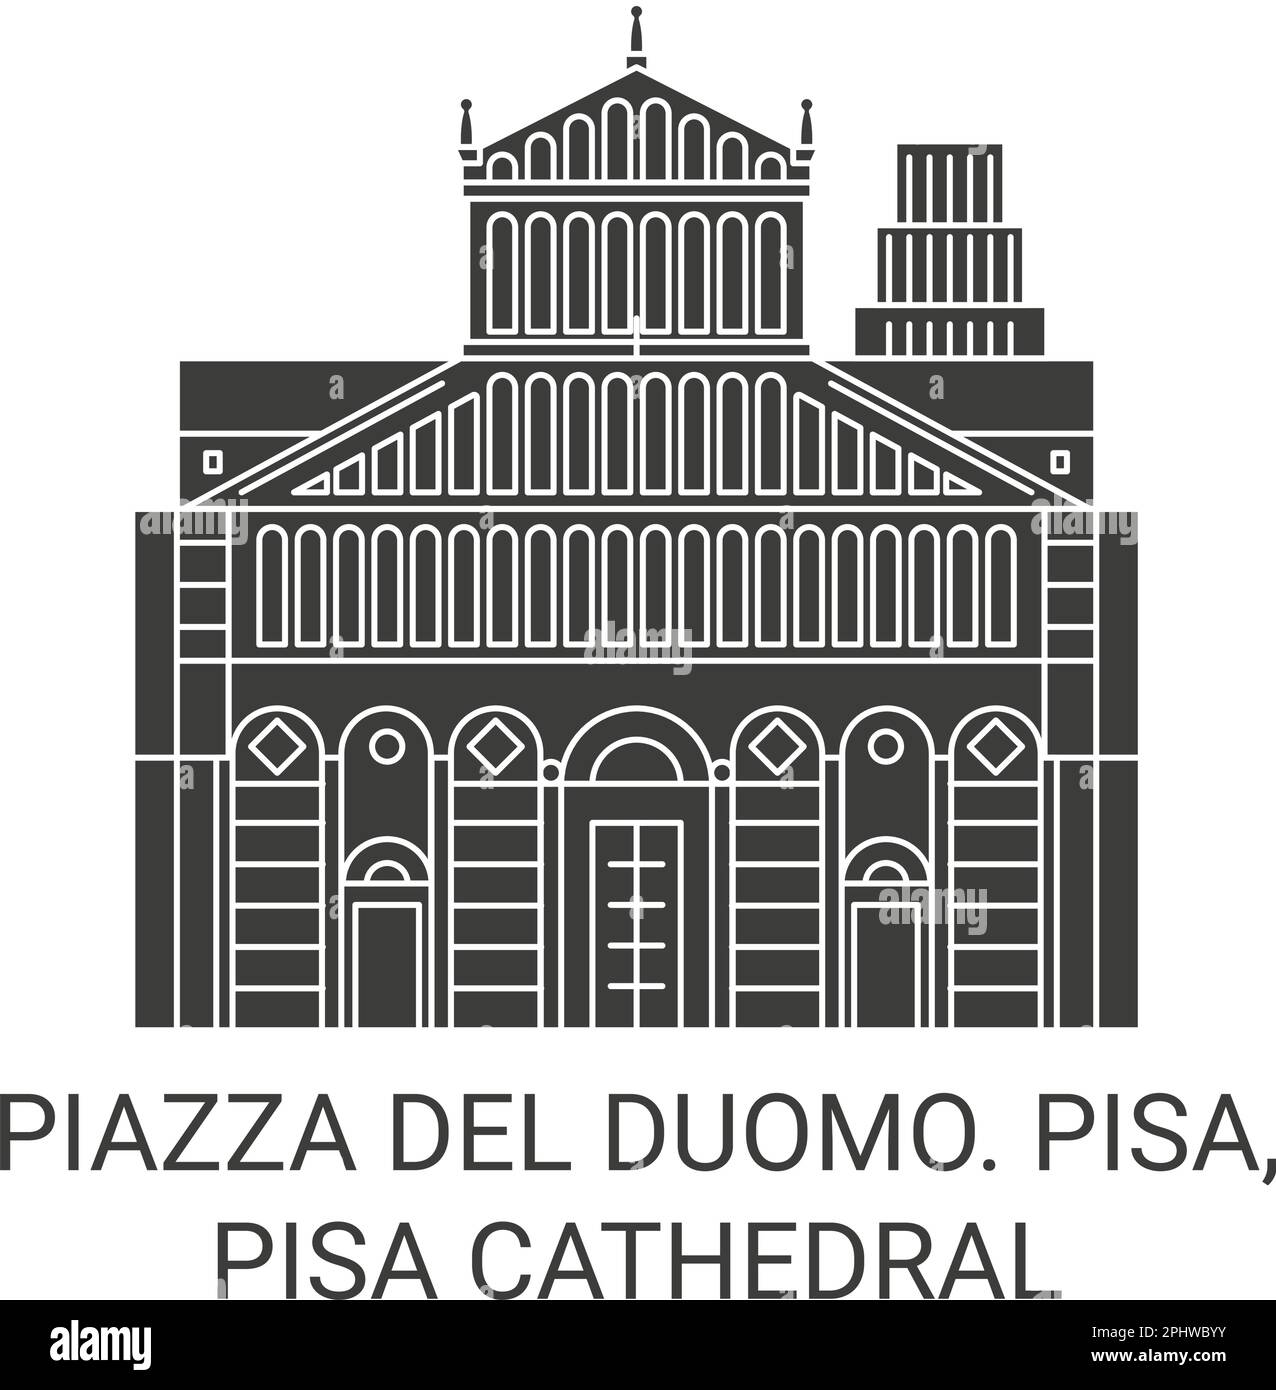 Italien, Piazza Del Duomo. Pisa, Pisa Kathedrale Reise Wahrzeichen Vektordarstellung Stock Vektor